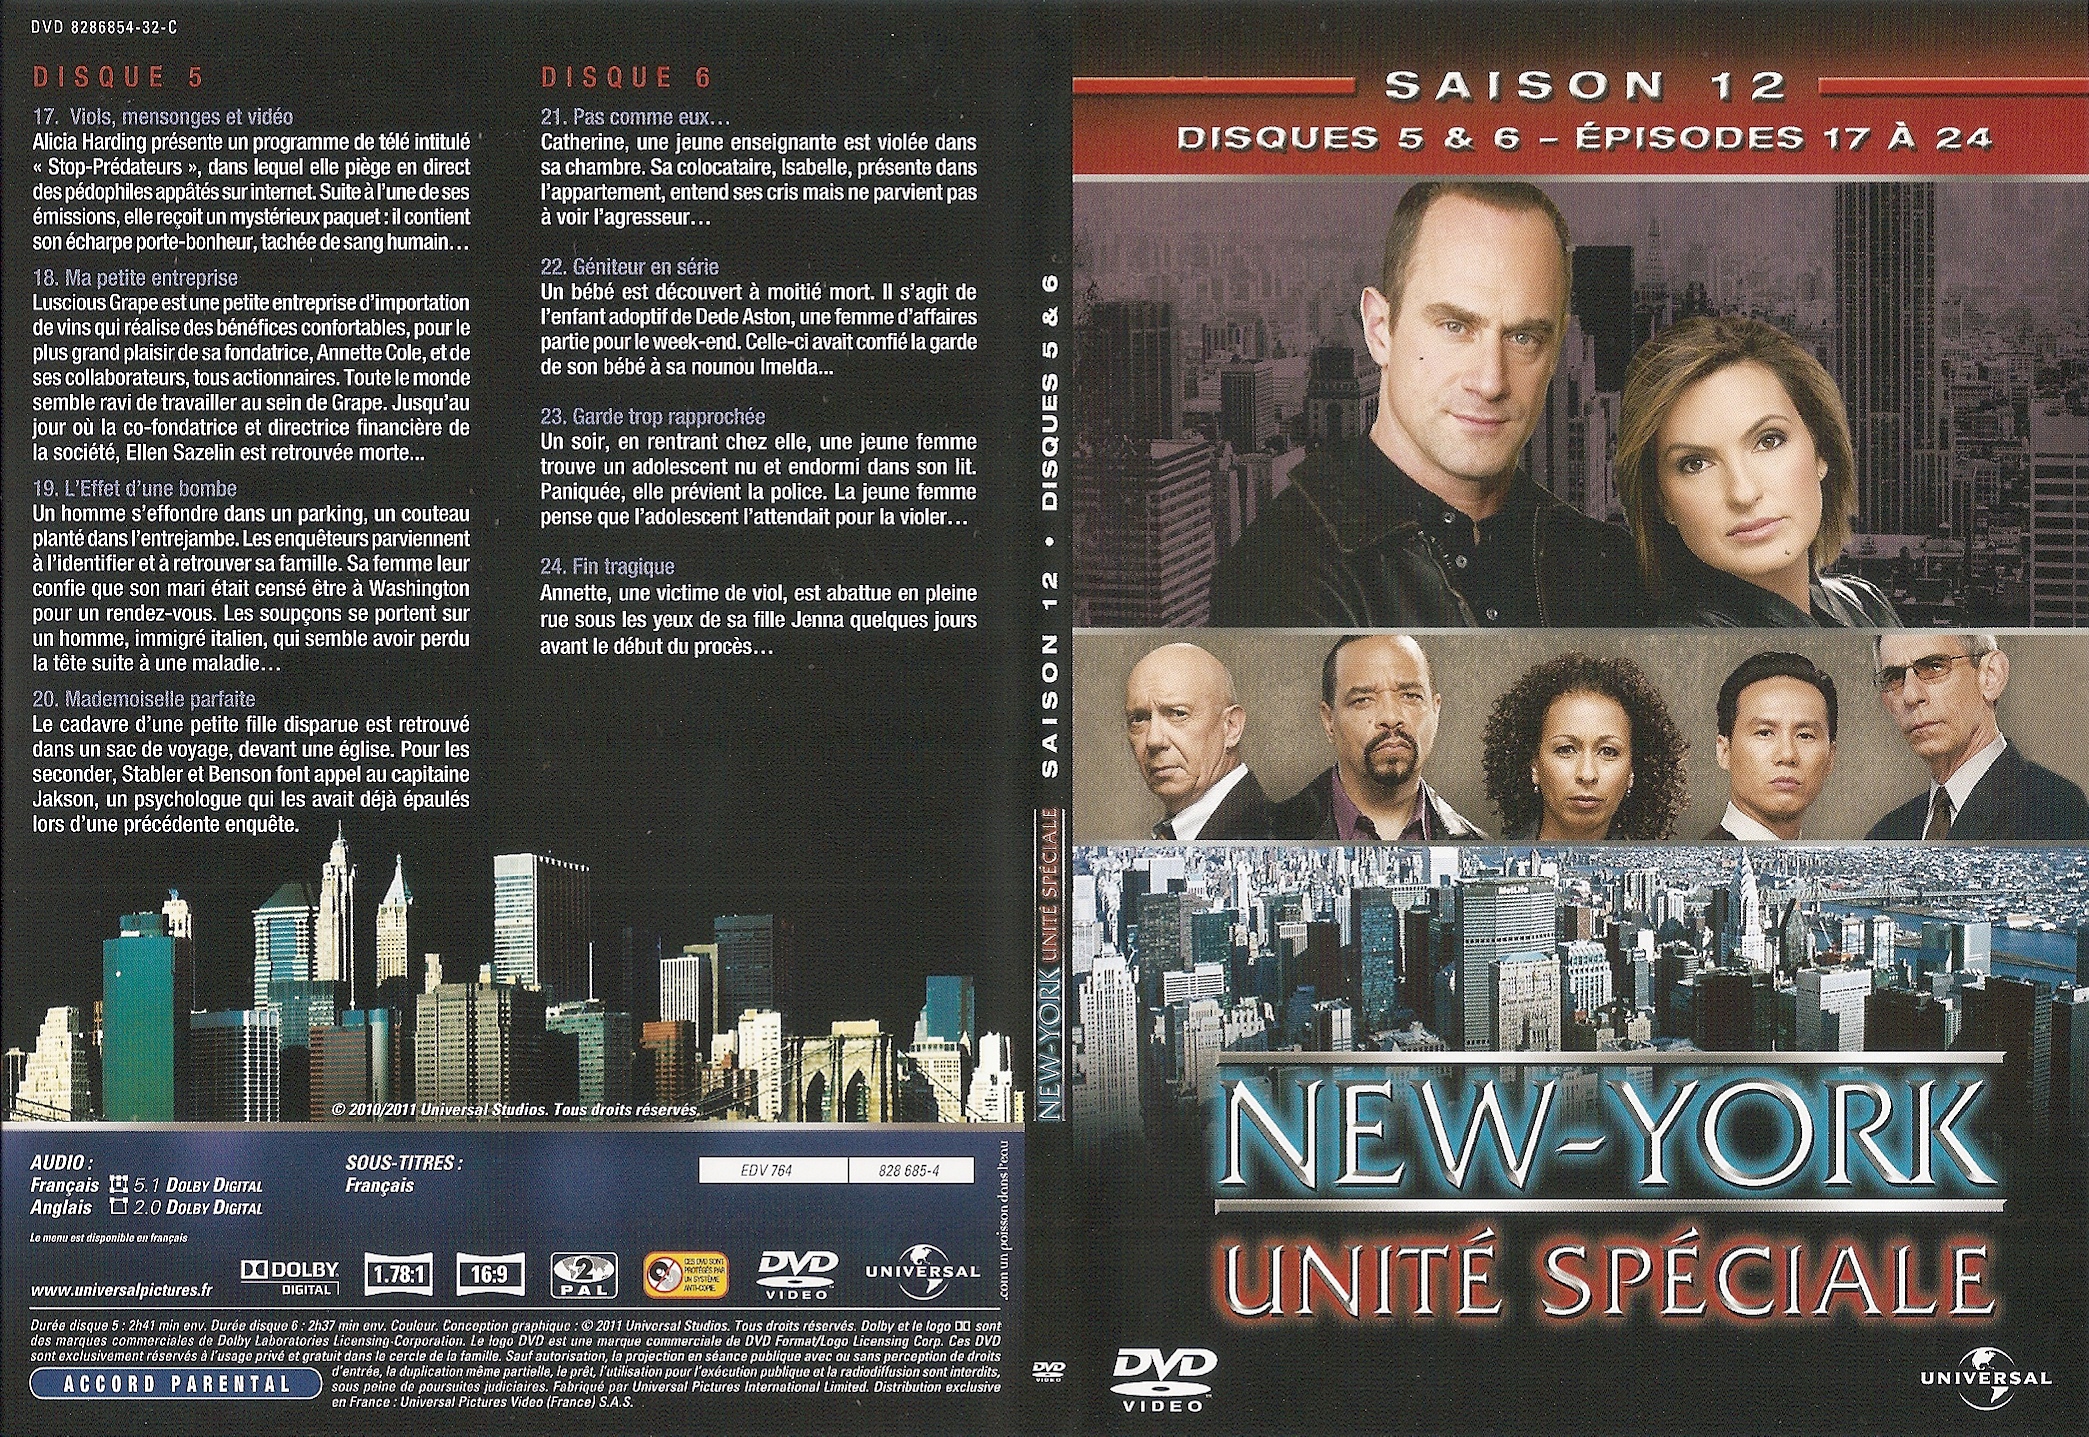 Jaquette DVD New York unit spciale saison 12 DVD 3